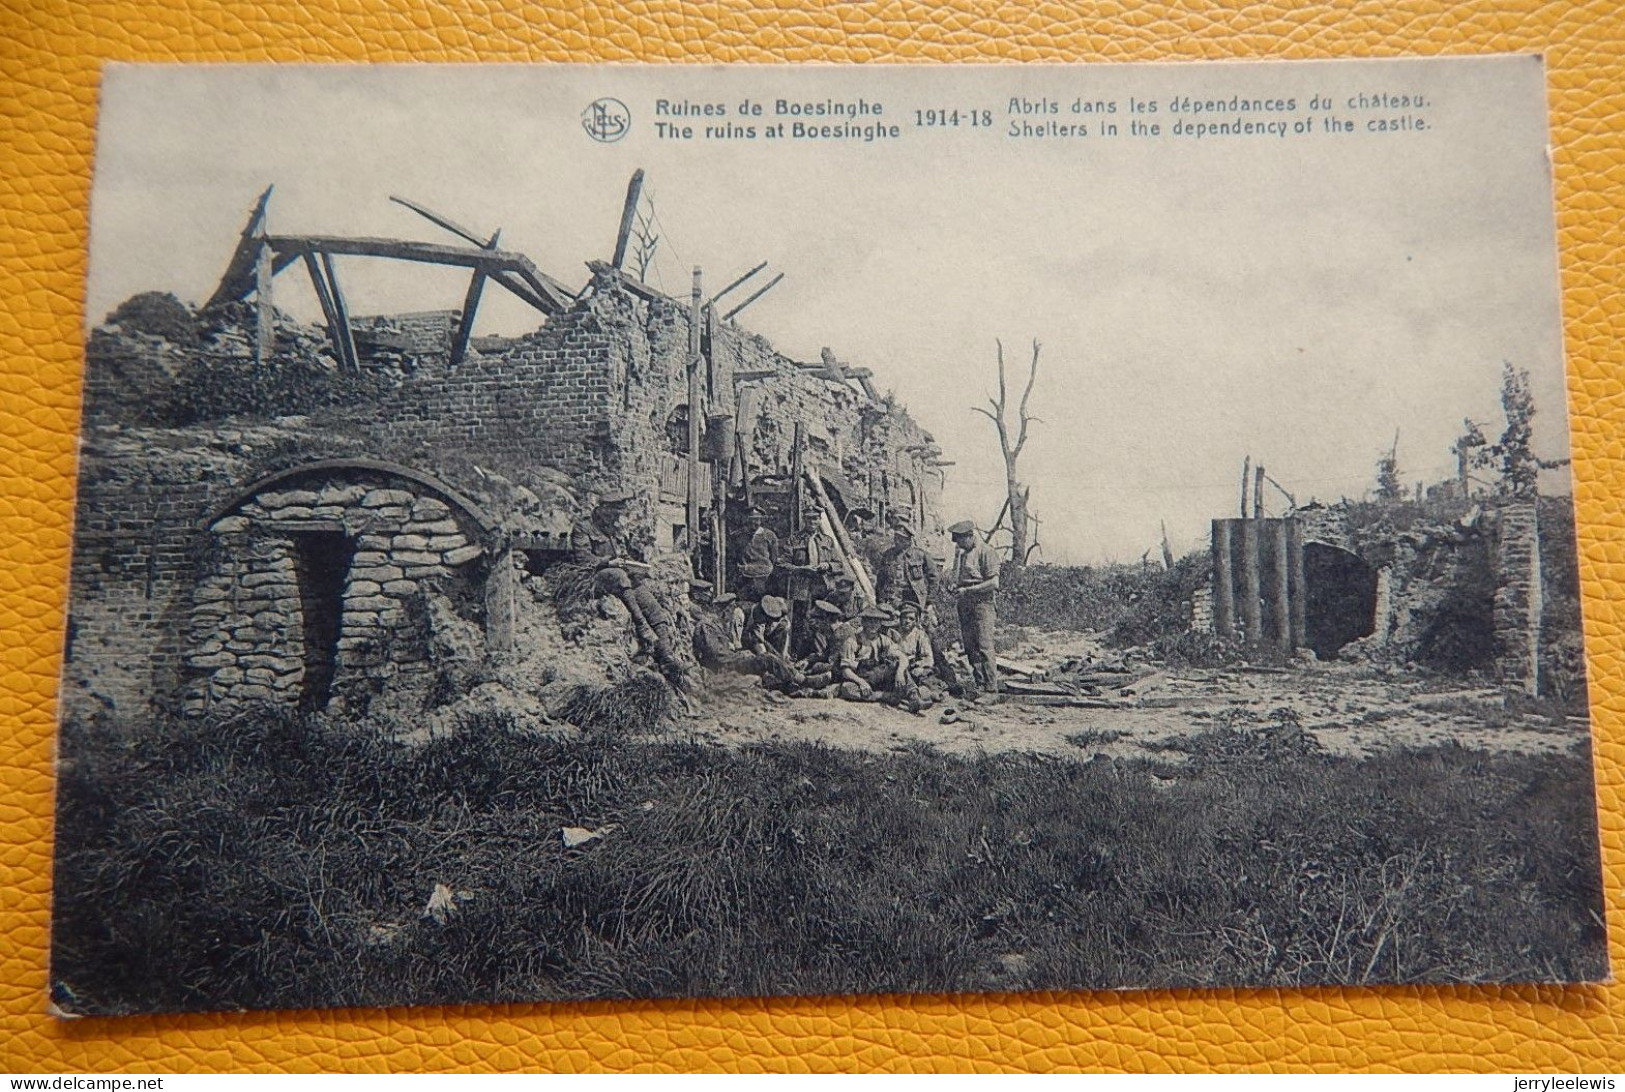 BOEZINGE  - BOESINGHE  - Puinen - Ruines - Abris Dans Les Dépendances Du Château  -  1919 - Ieper